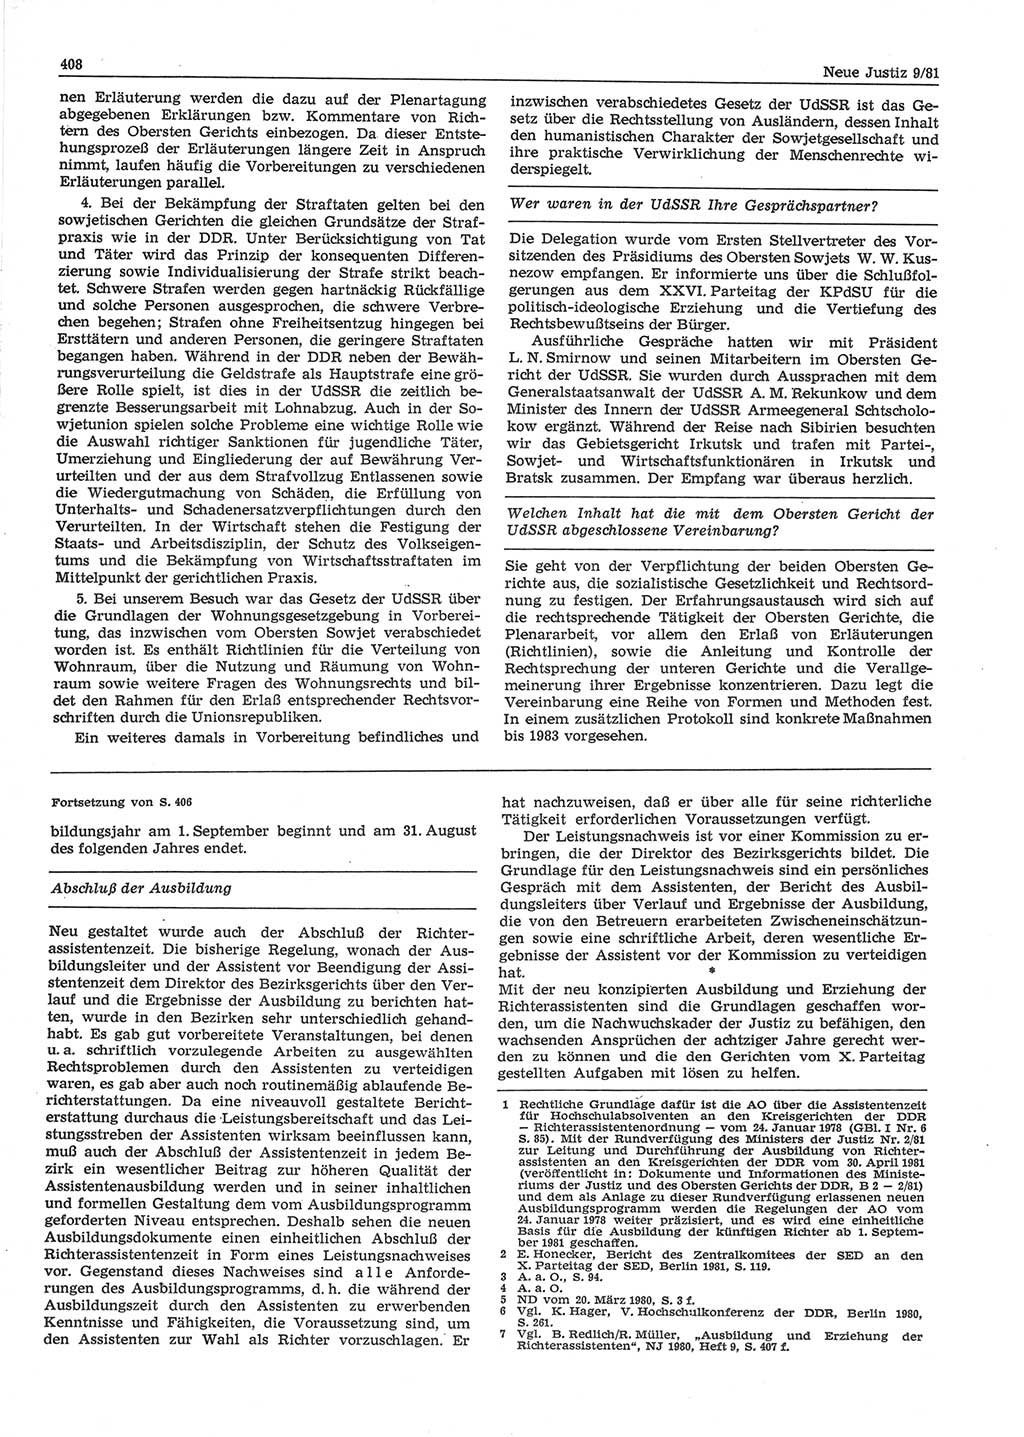 Neue Justiz (NJ), Zeitschrift für sozialistisches Recht und Gesetzlichkeit [Deutsche Demokratische Republik (DDR)], 35. Jahrgang 1981, Seite 408 (NJ DDR 1981, S. 408)